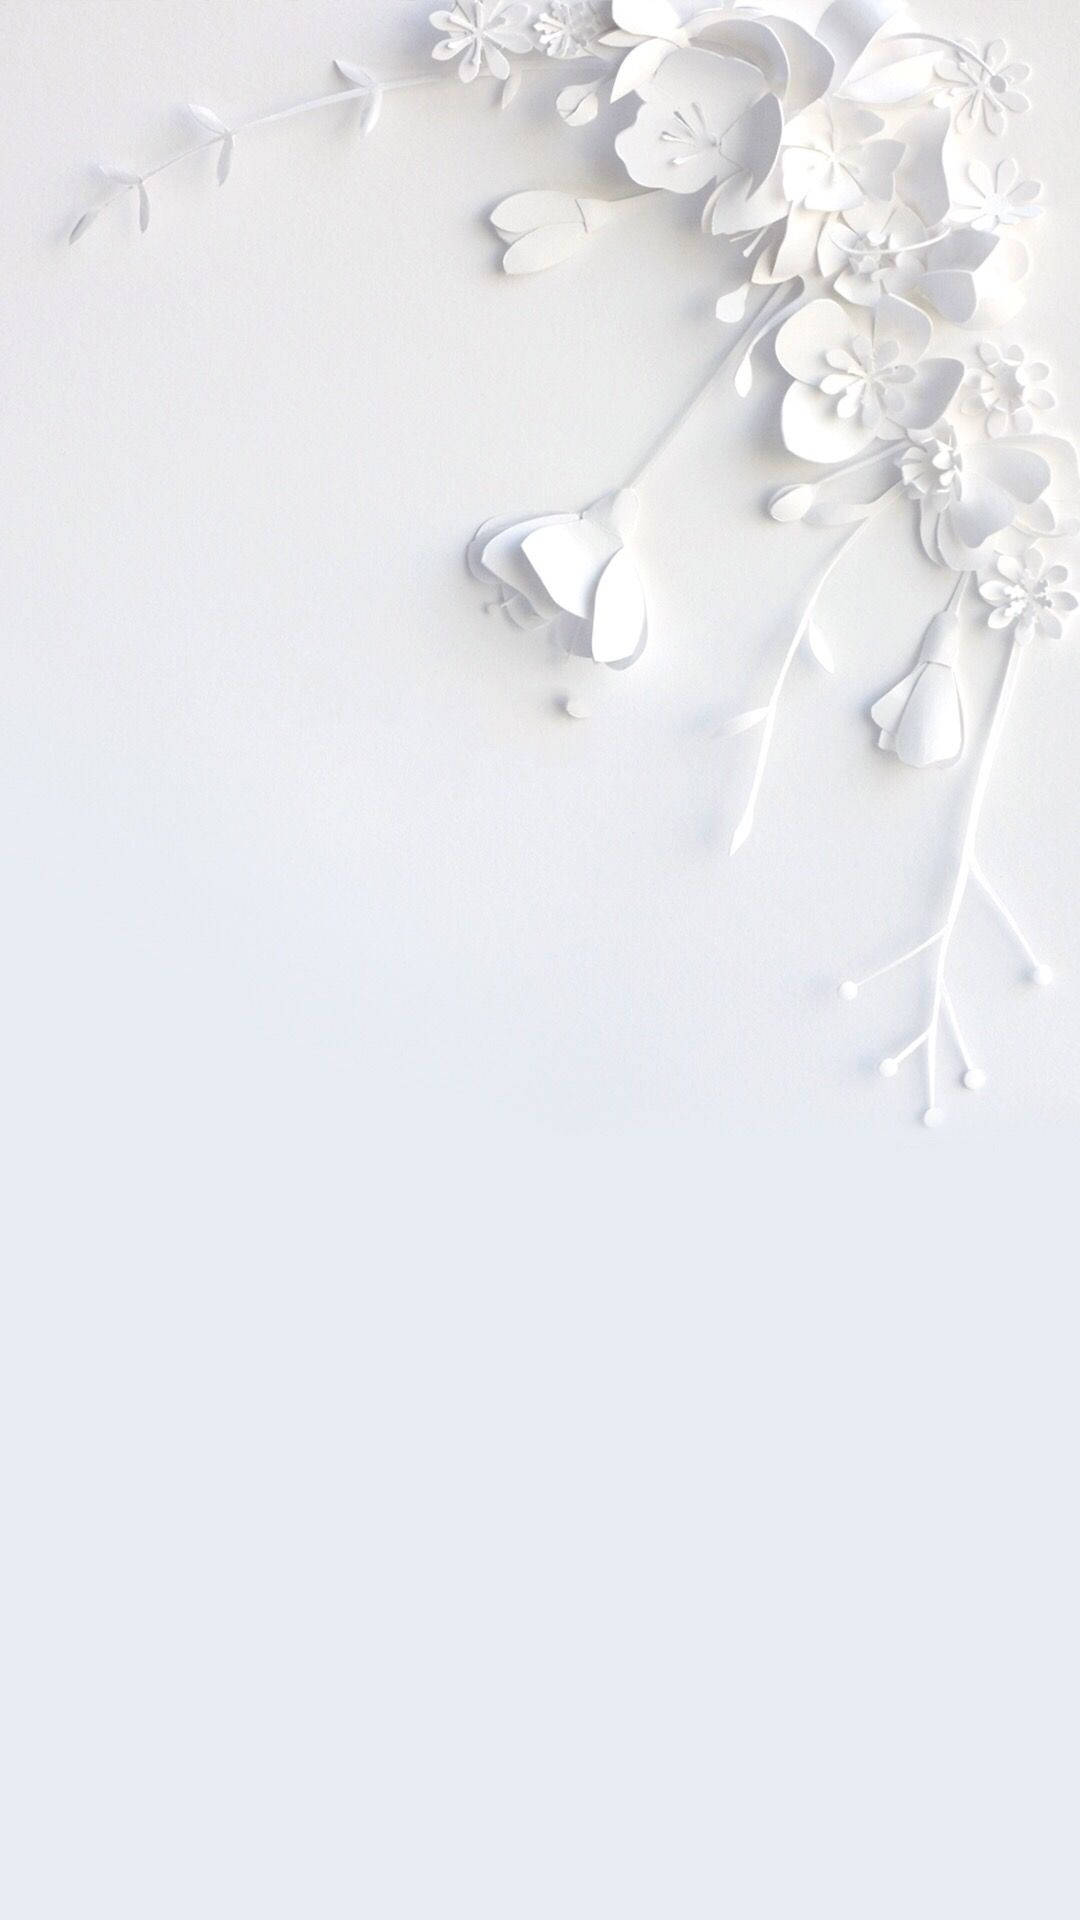 Diseñode Flores Monocromáticas En Blanco Para Iphone. Fondo de pantalla